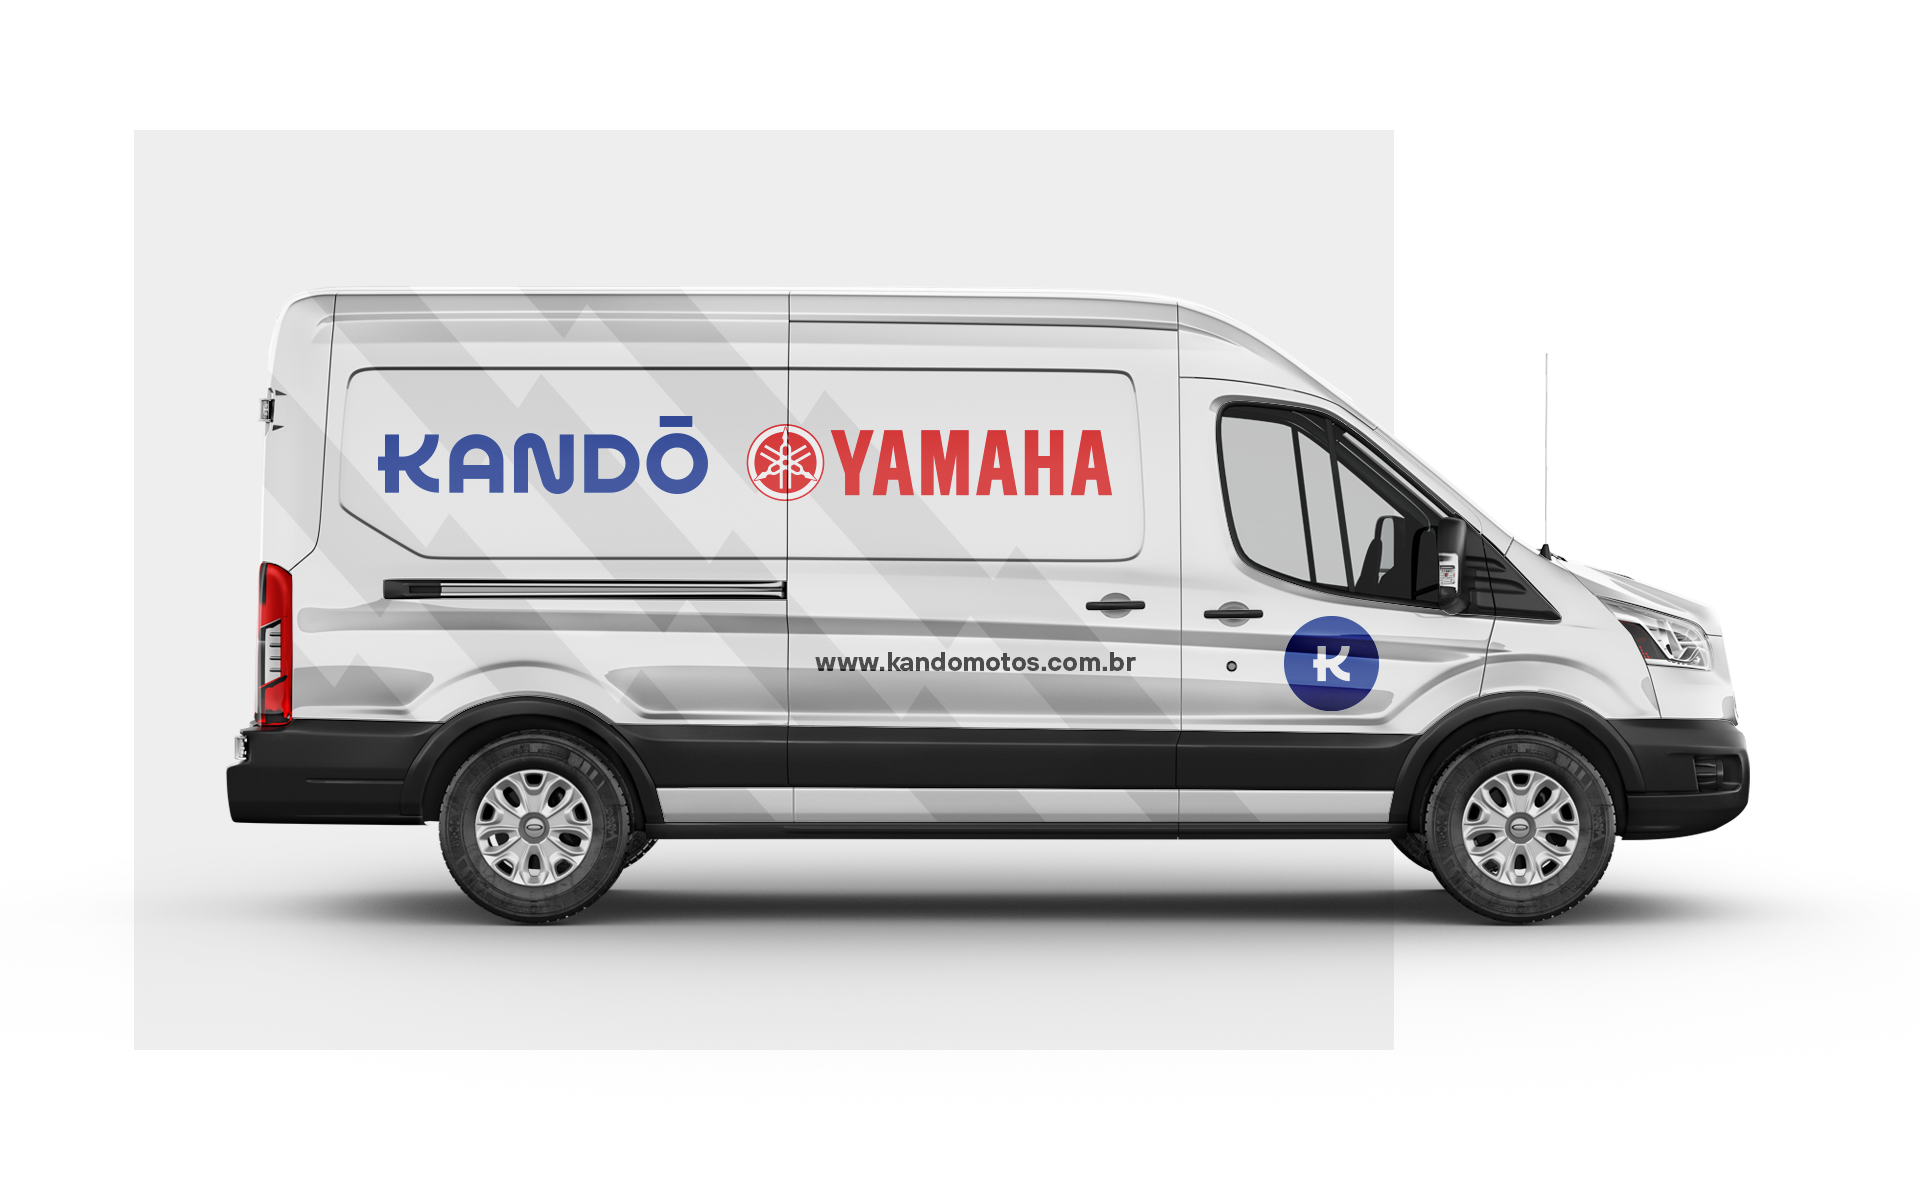 Kand\u00f4 - Yamaha on Behance25894093130311.5e5ed1d99a2ca.png